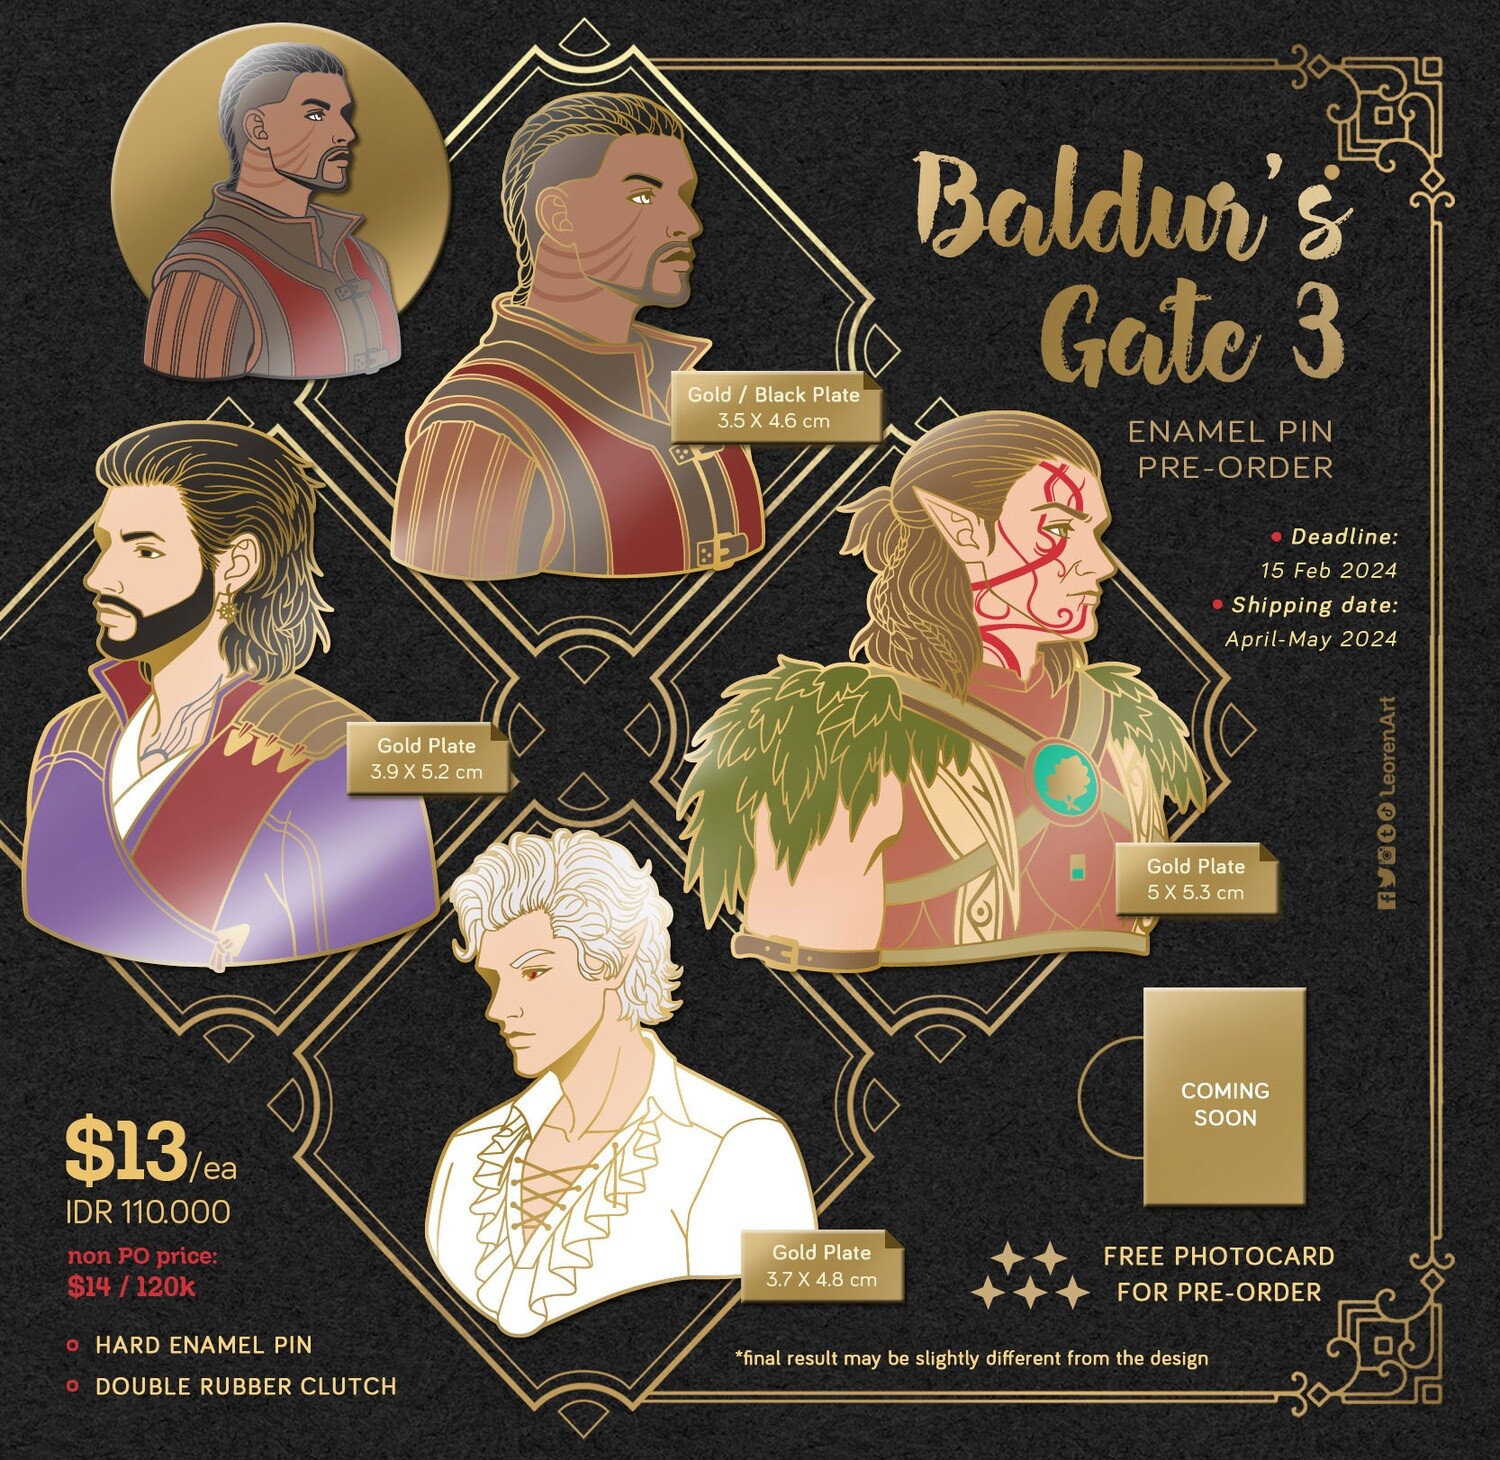 Baldur's Gate 3 / BG3 - Hard Enamel Pin